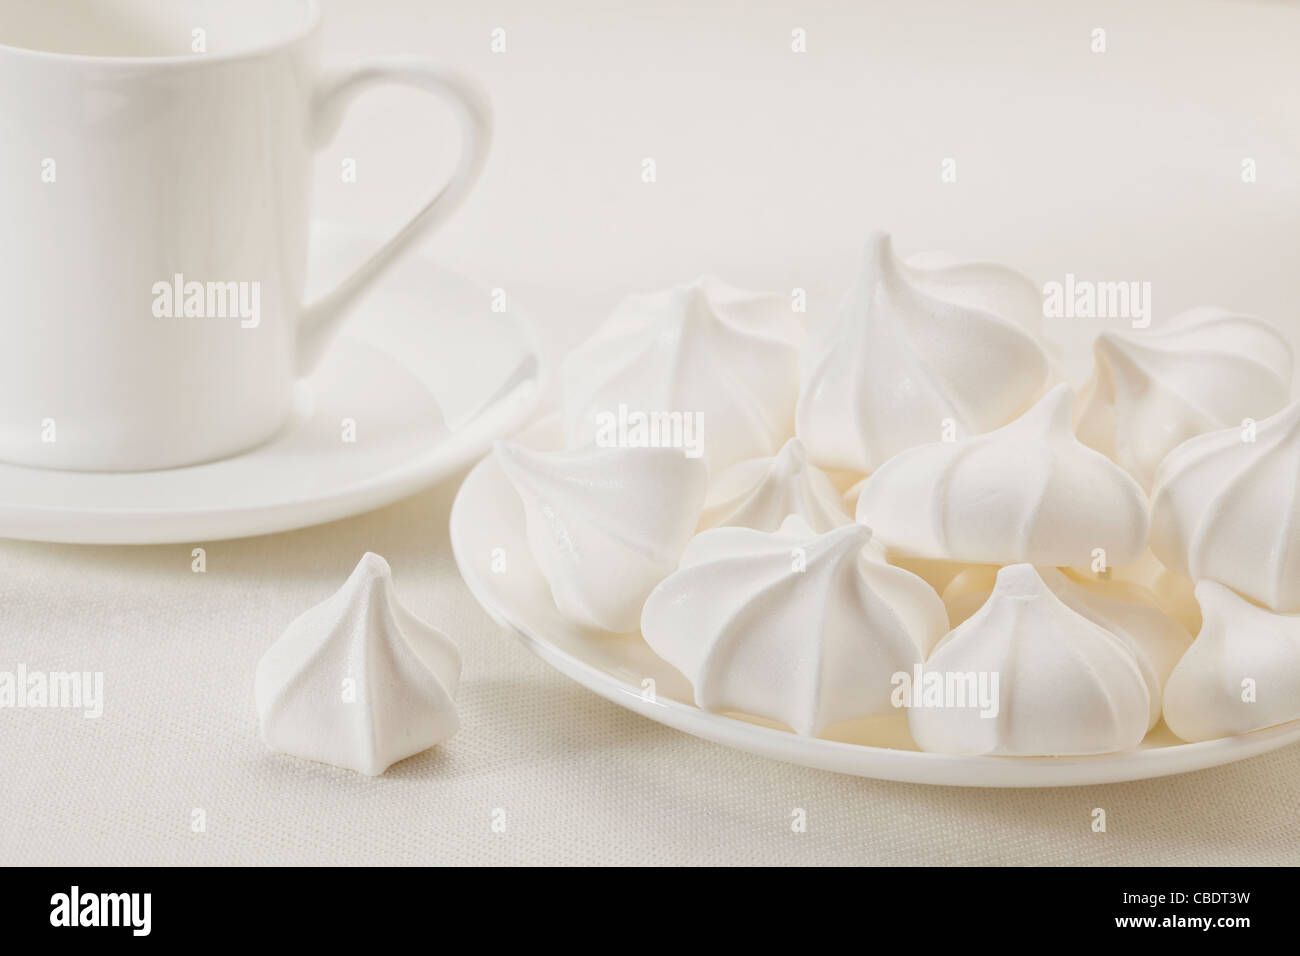 Assiette de cookies meringue et Espresso Coffee cup sur nappe blanche Banque D'Images